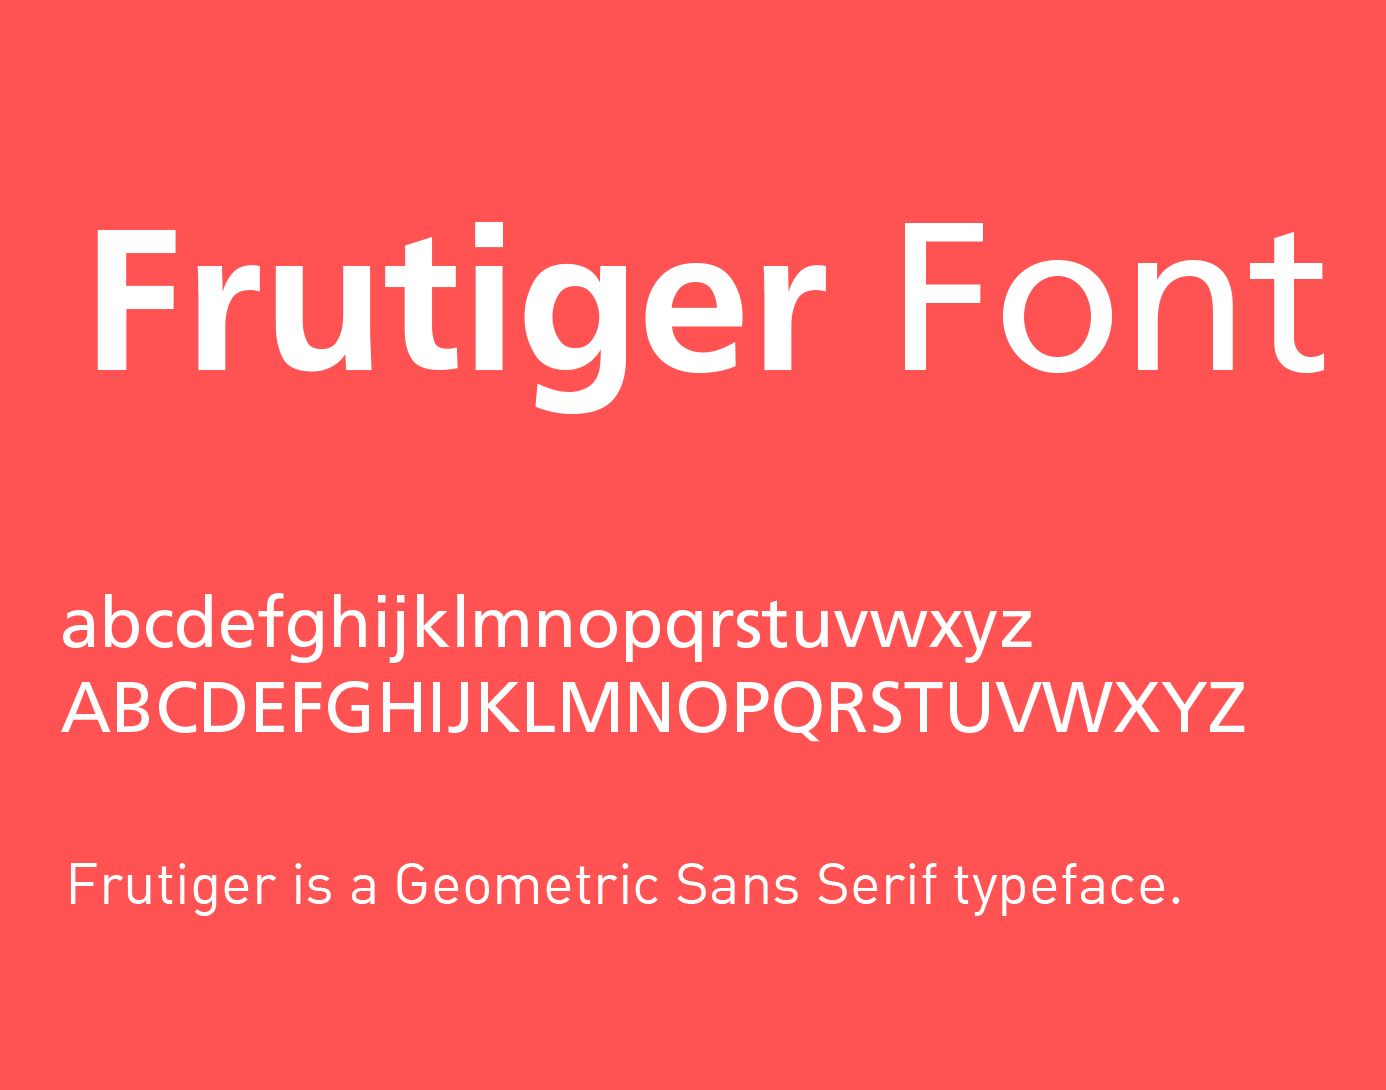 frutiger bold font